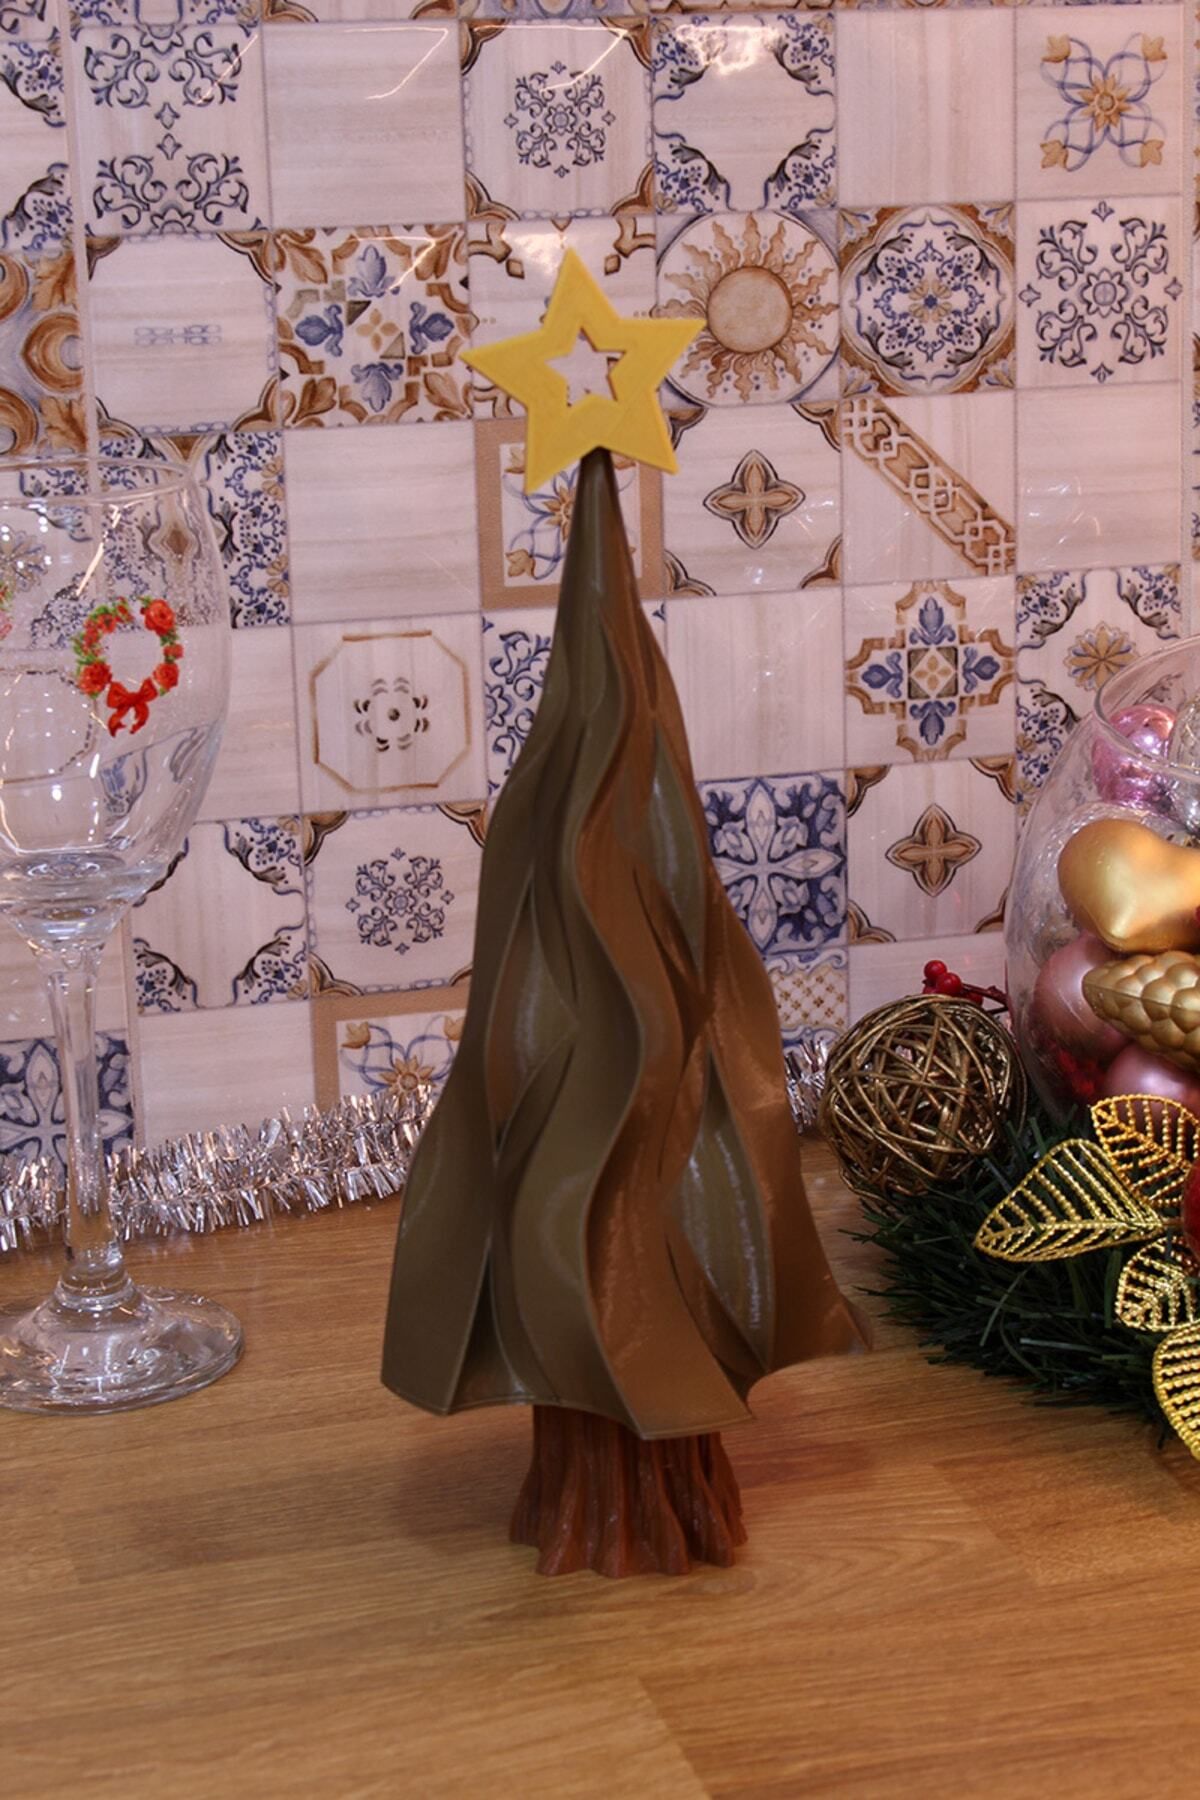 Maflen Klasik Yılbaşı Noel Çam Ağacı Dekoratif Biblo 25 Cm Bronz